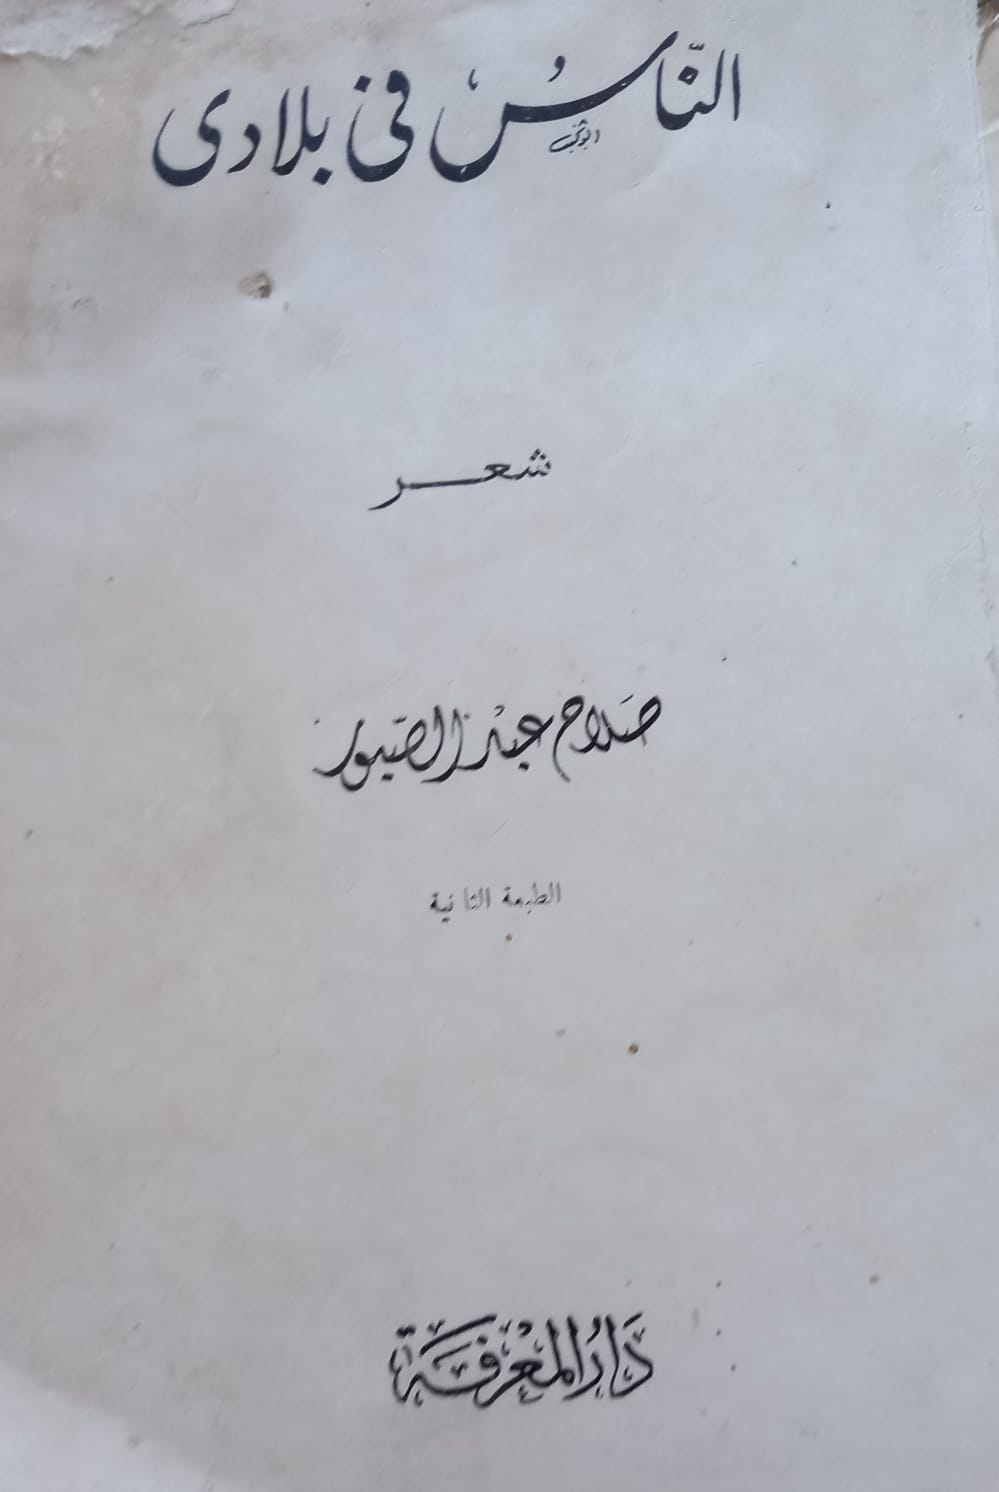 الطبعة الثانية فى مصر 1962 بدون قصيدة عودة ذى الوجه الكئيب